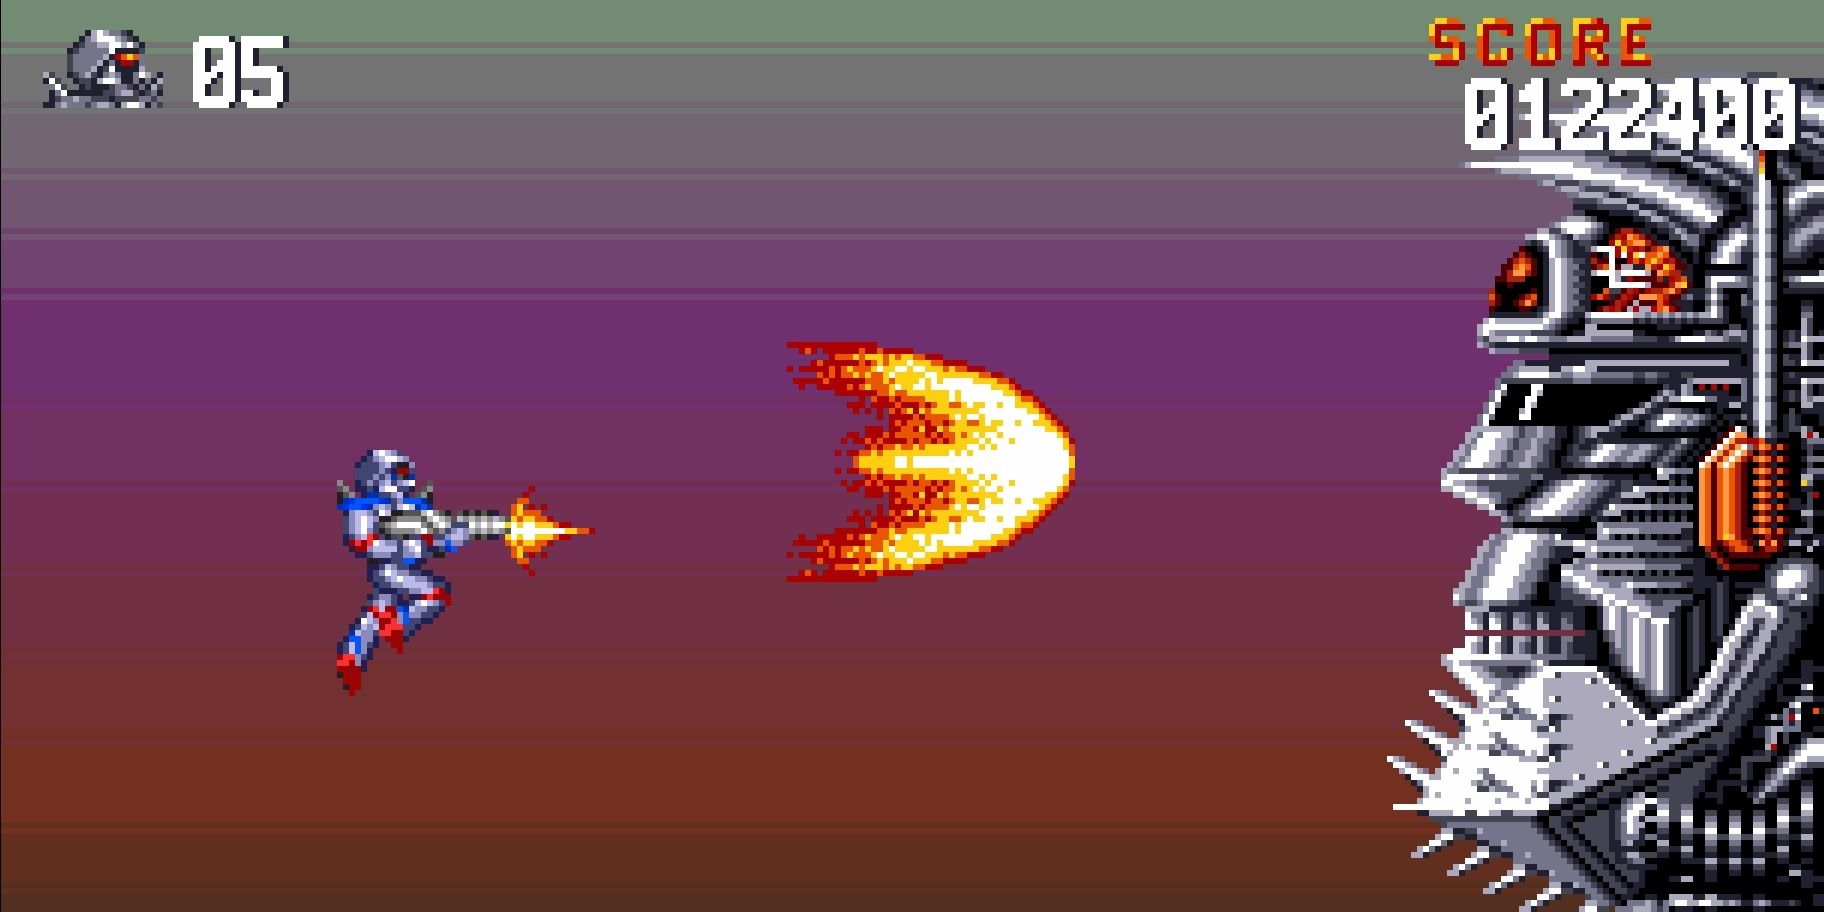 Migliori giochi Amiga - Turrican II The Final Fight